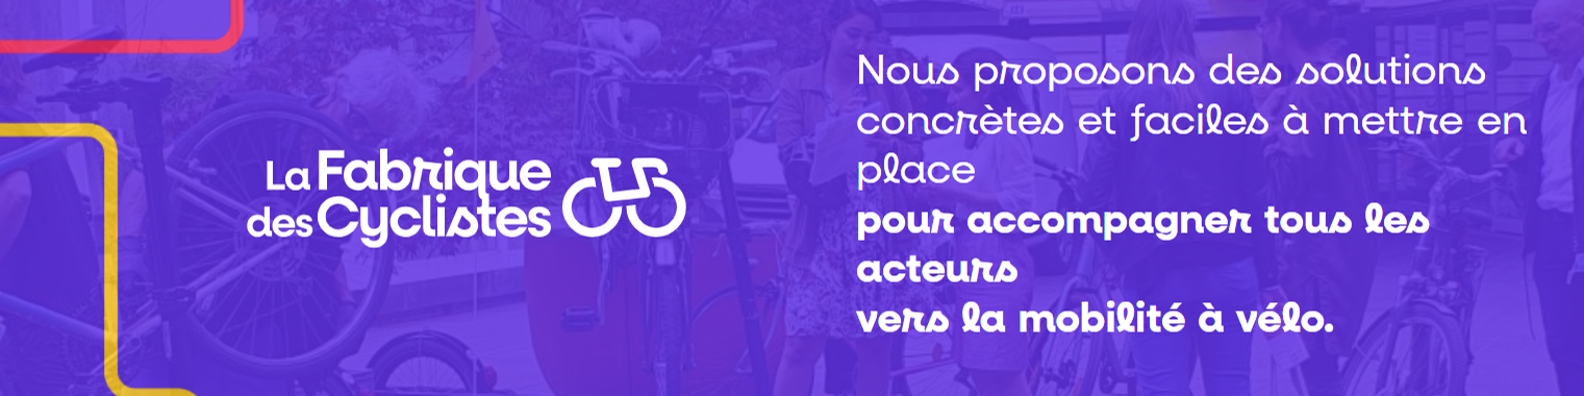 Bannière de La Fabrique des Cyclistes